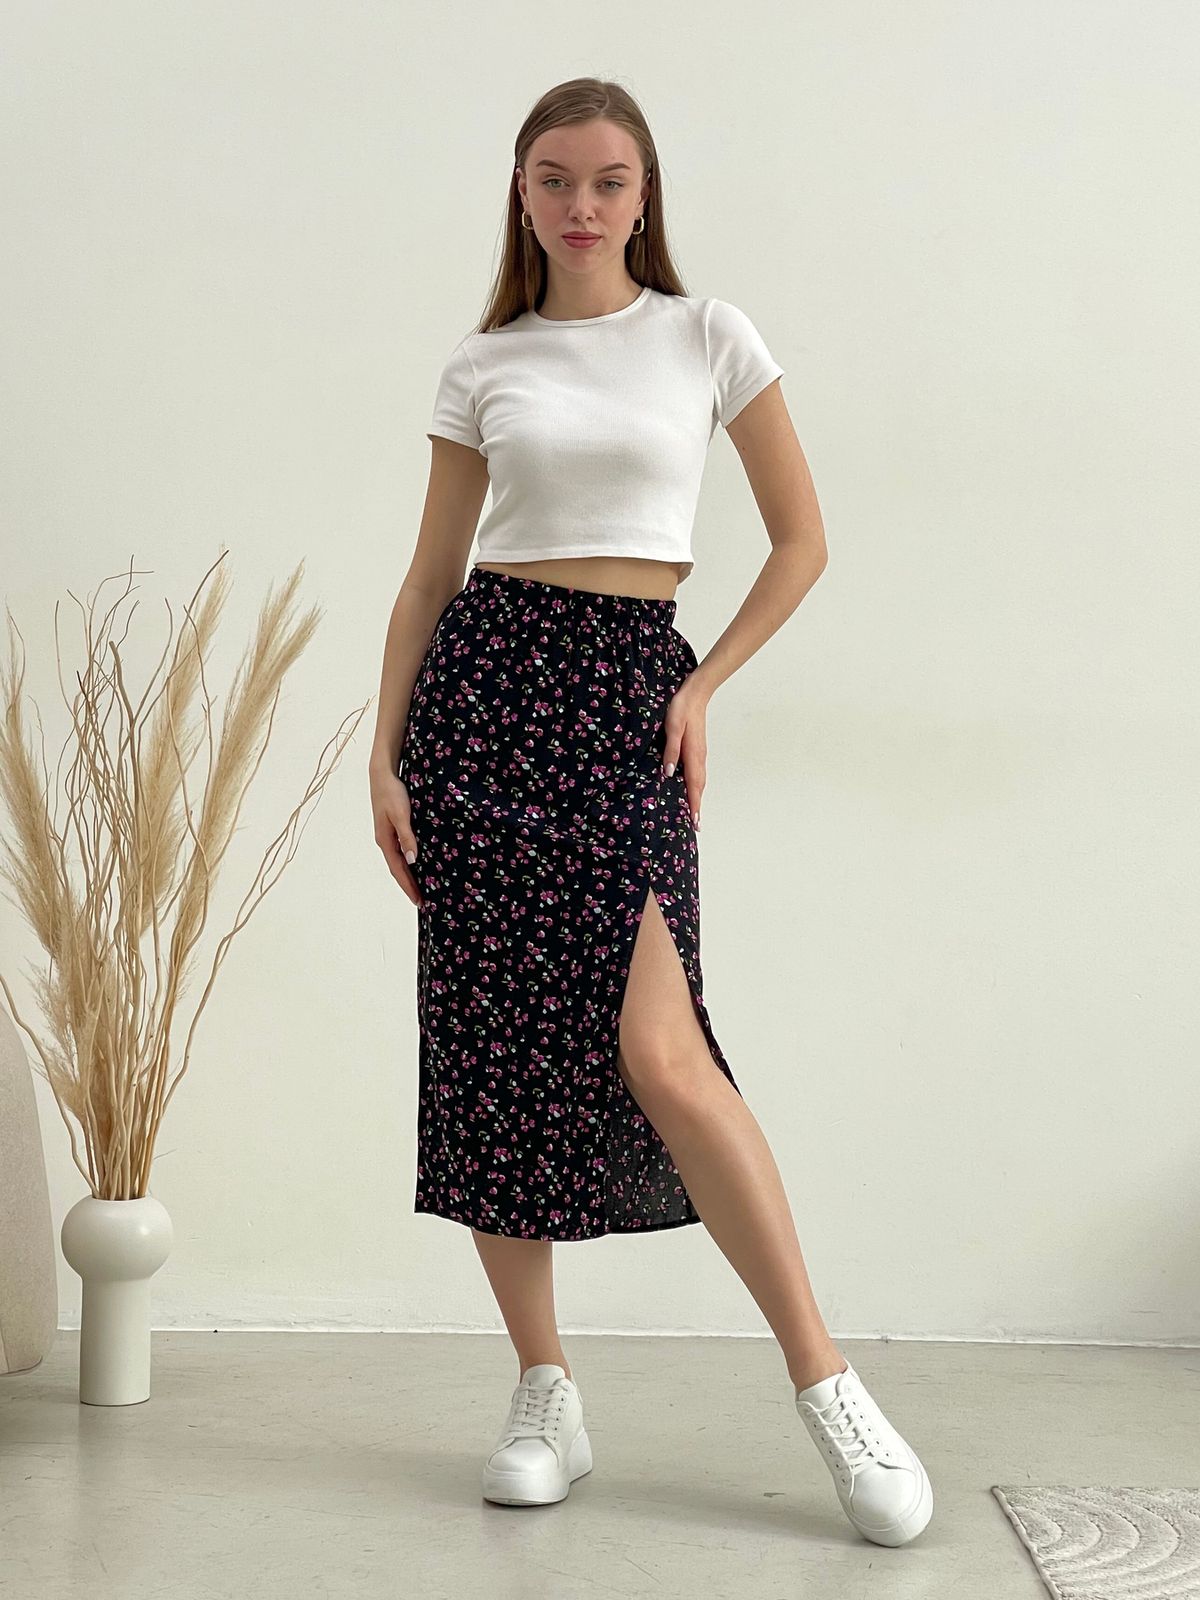 Купить Длинная женская юбка с разрезом в цветочек черная Merlini Лакко 400001261 размер 42-44 (S-M) в интернет-магазине